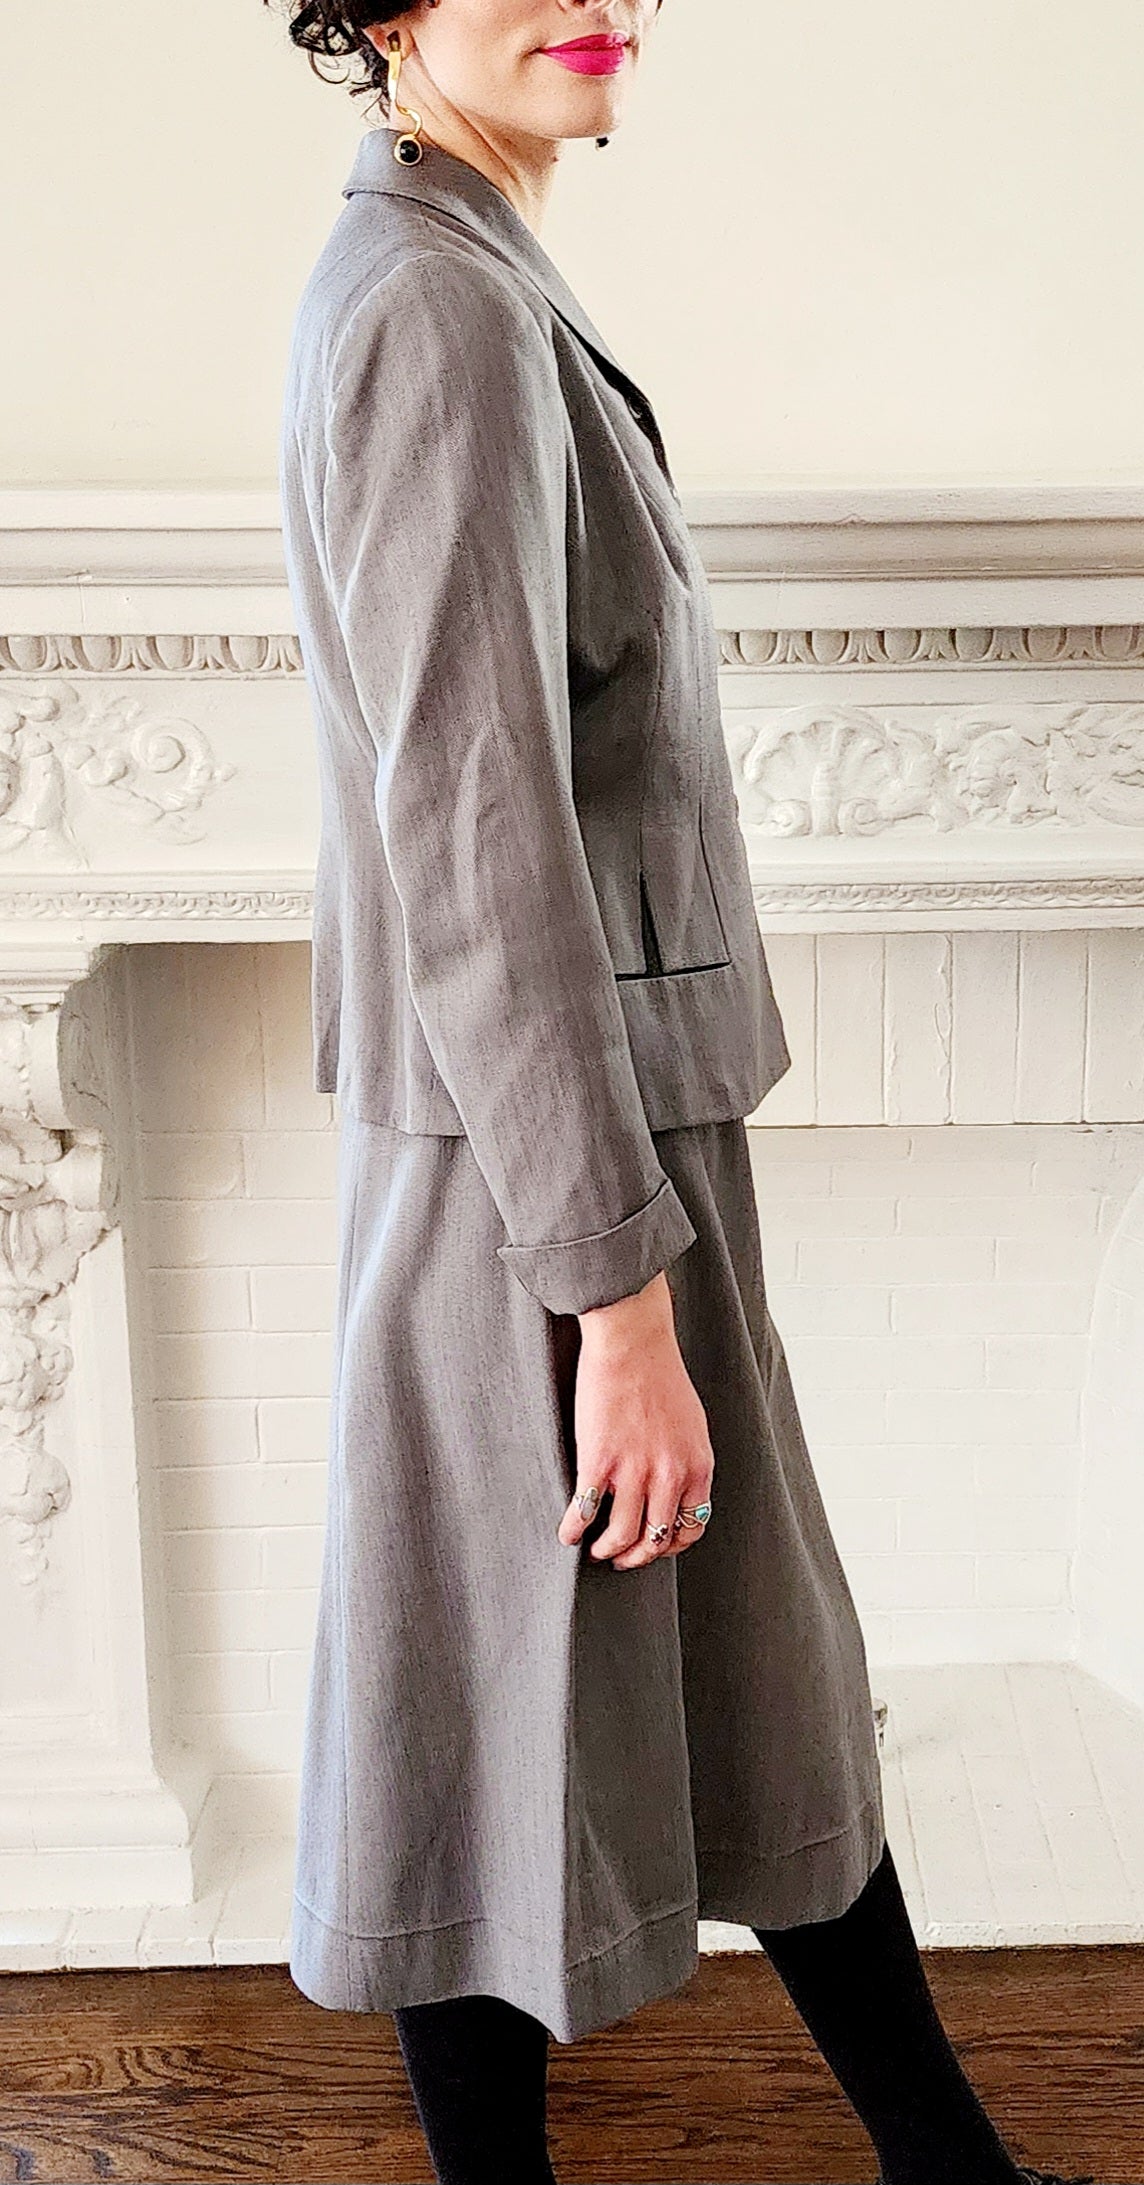 1940s Gray Wool Skirt Suit Blazer & Skirt Ensemble